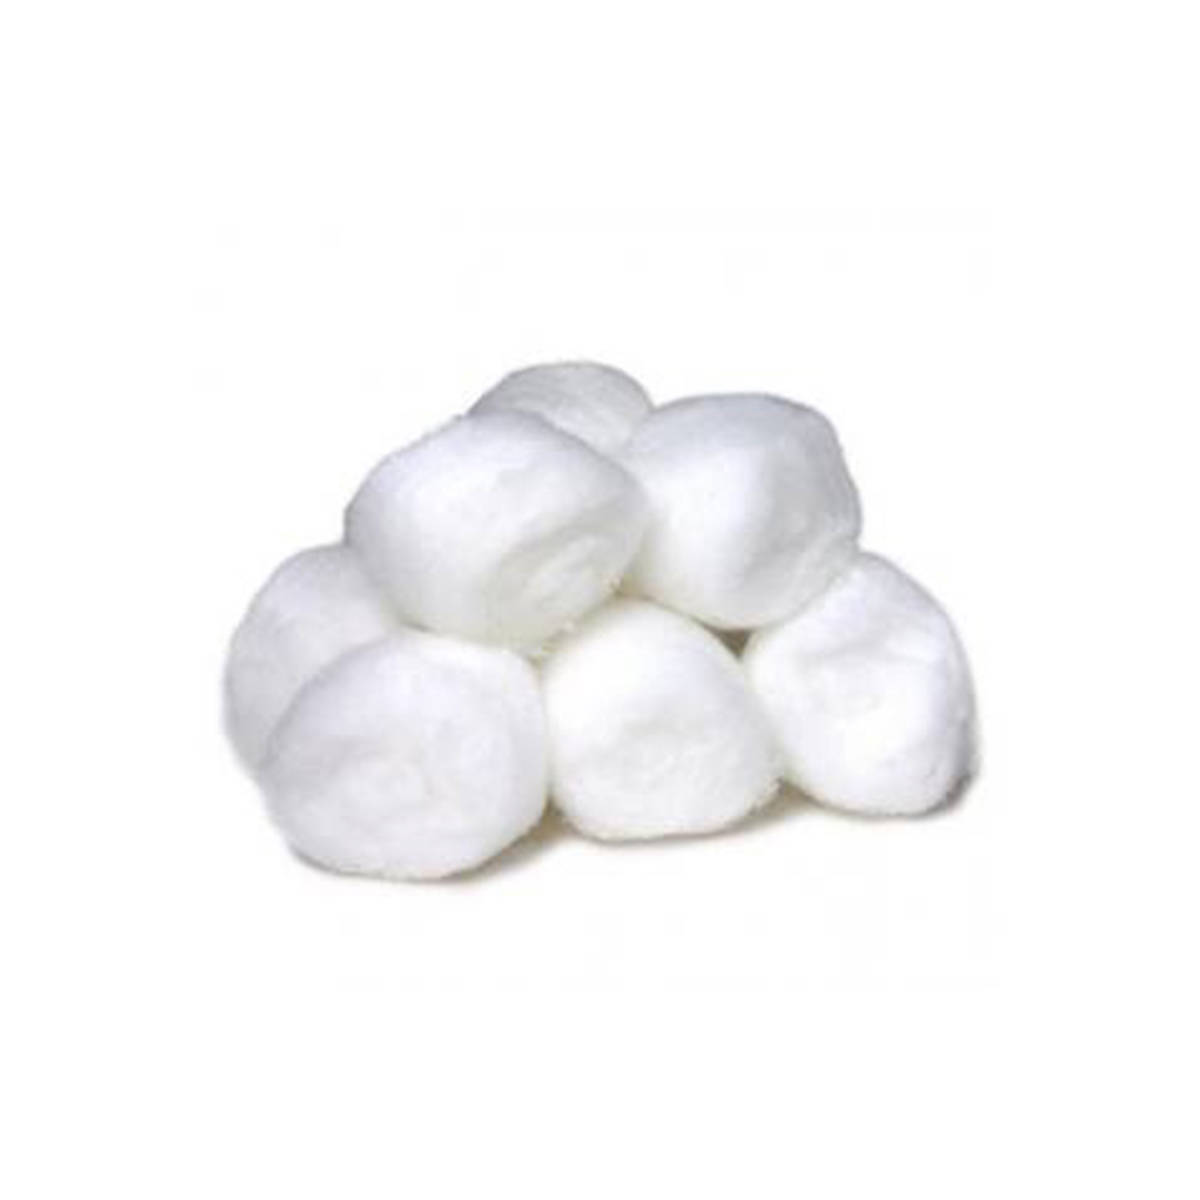 Heap of cotton balls